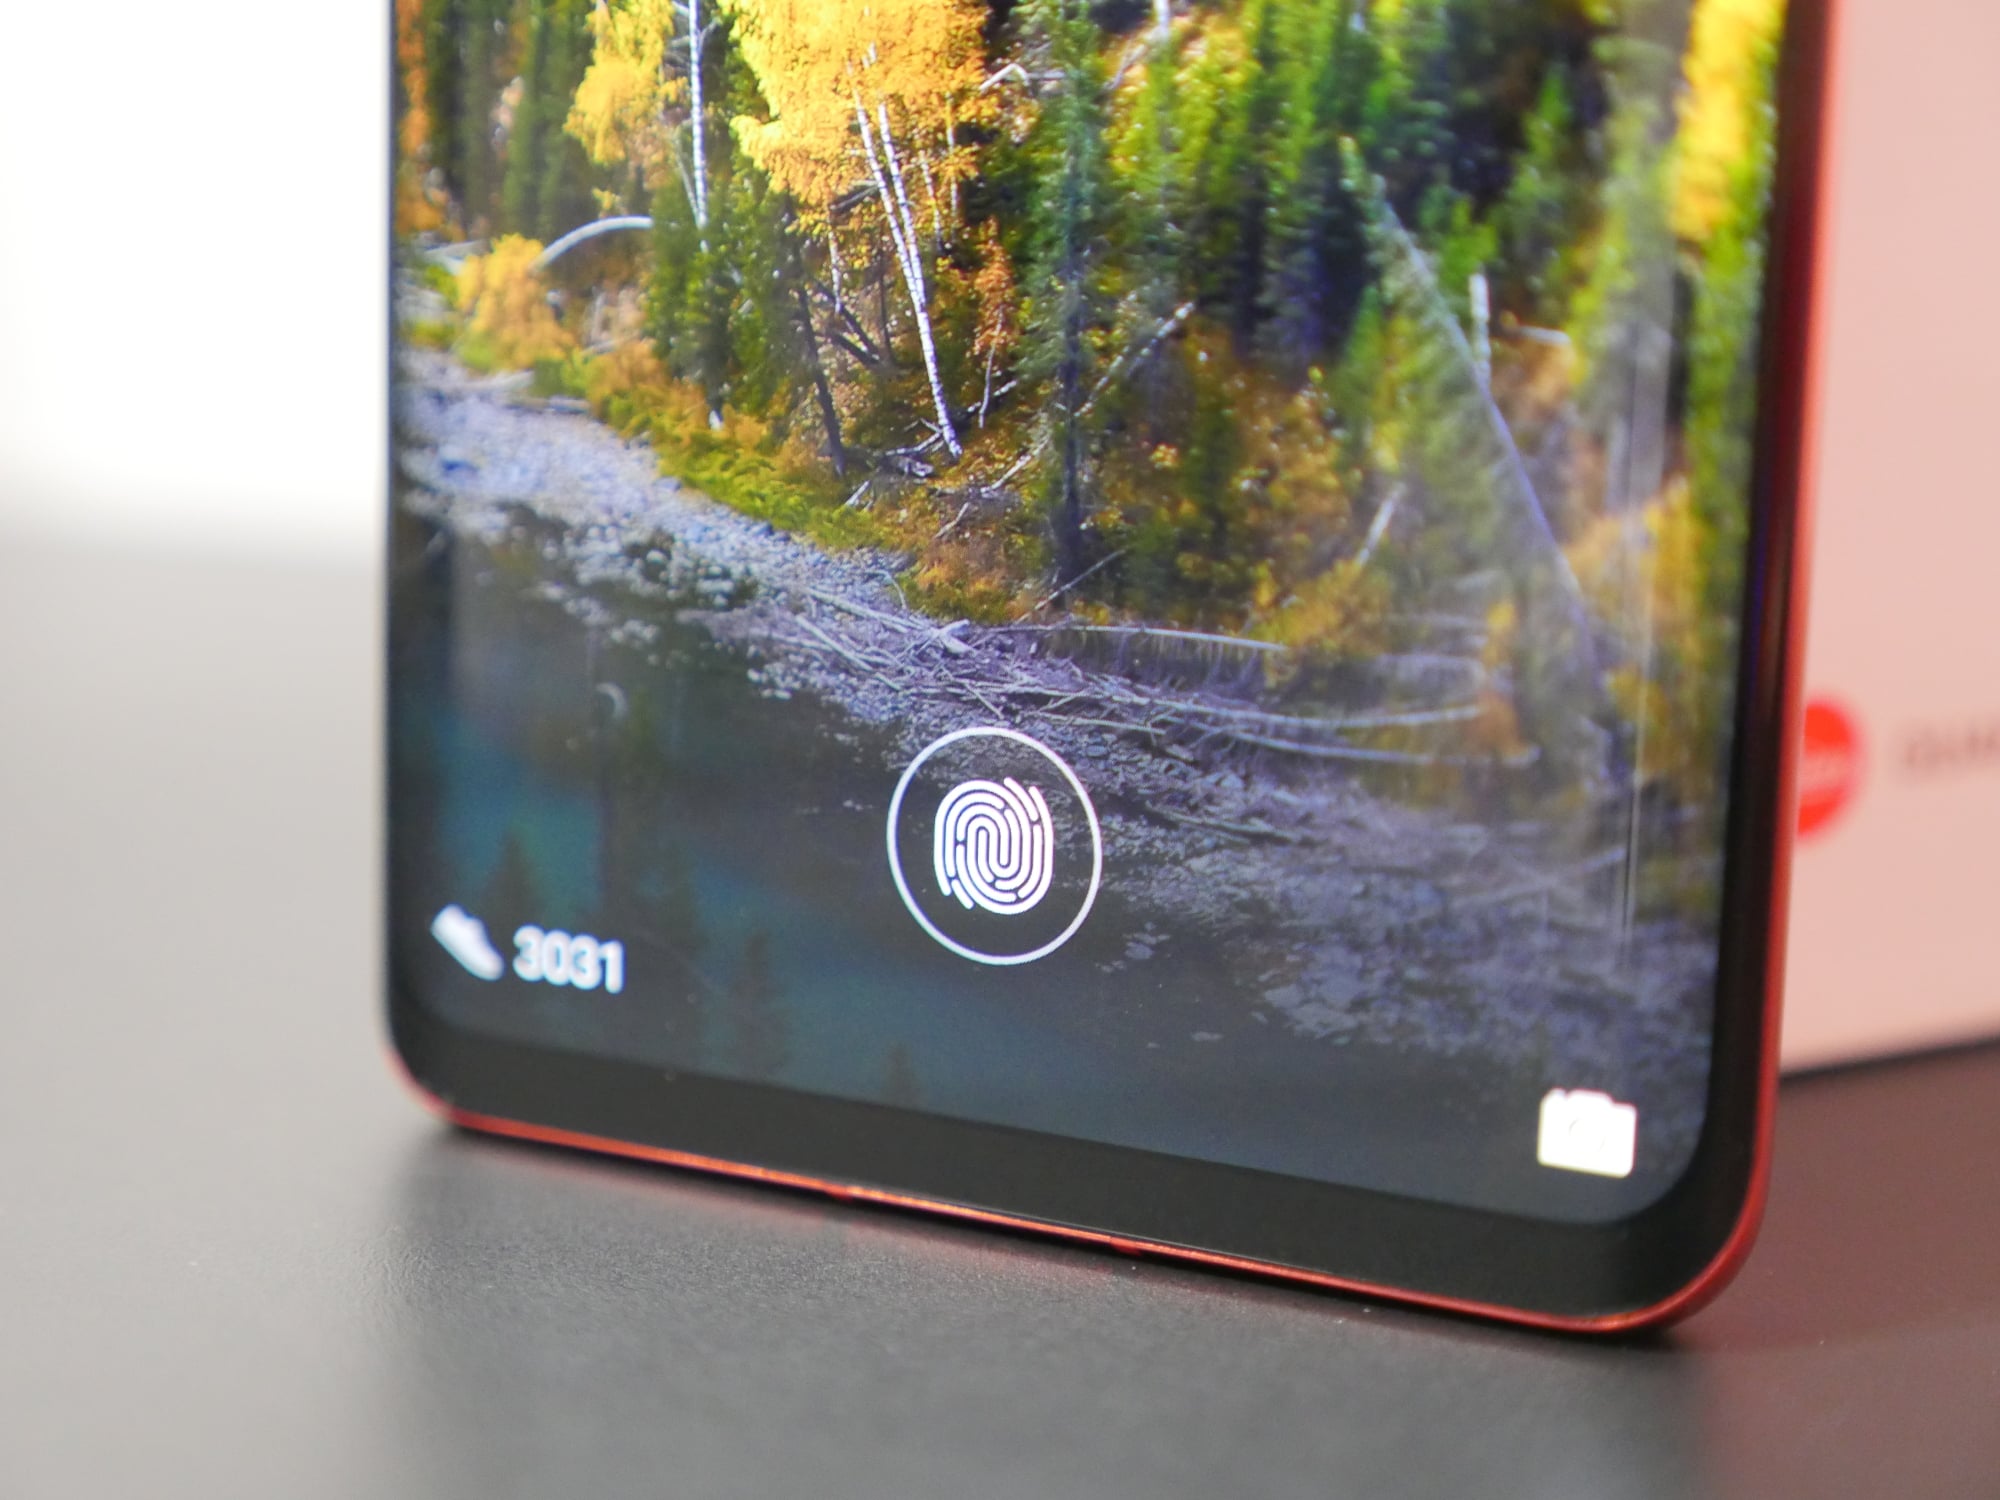 ekranowy czytnik linii papilarnych w smartfonie Huawei P30 Pro